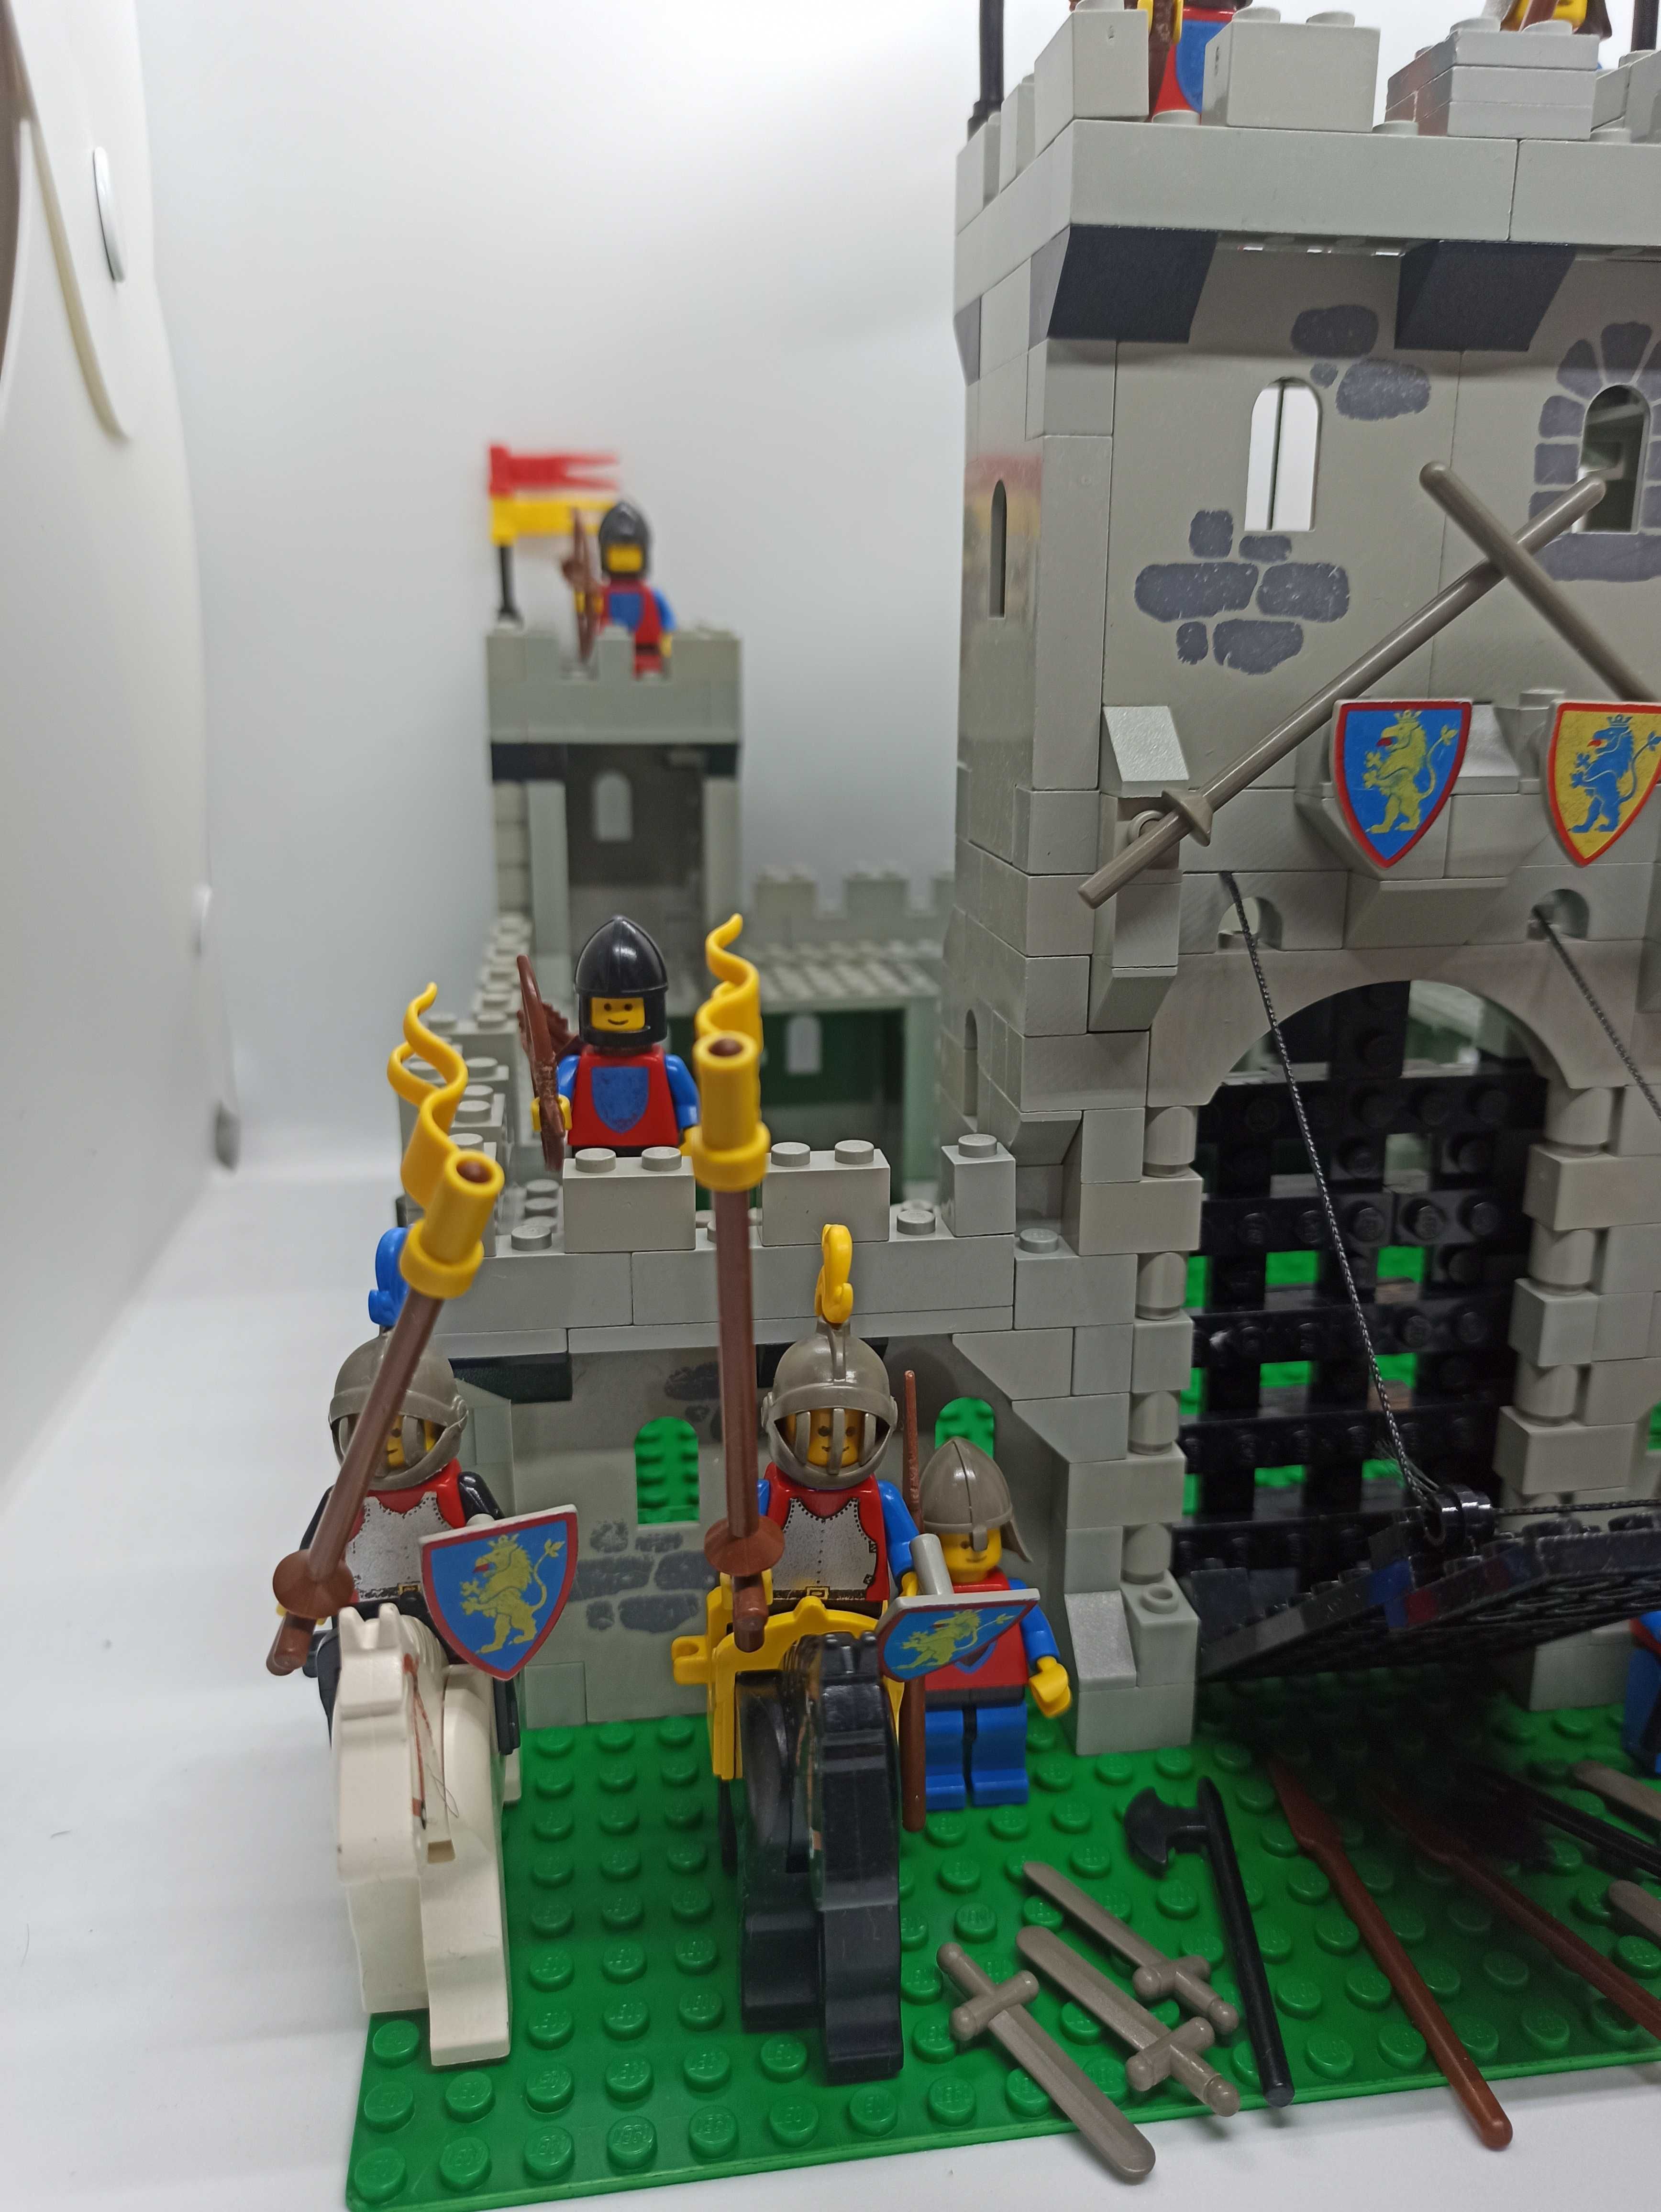 Lego Castle 6080 - King's Castle, Zamek Króla